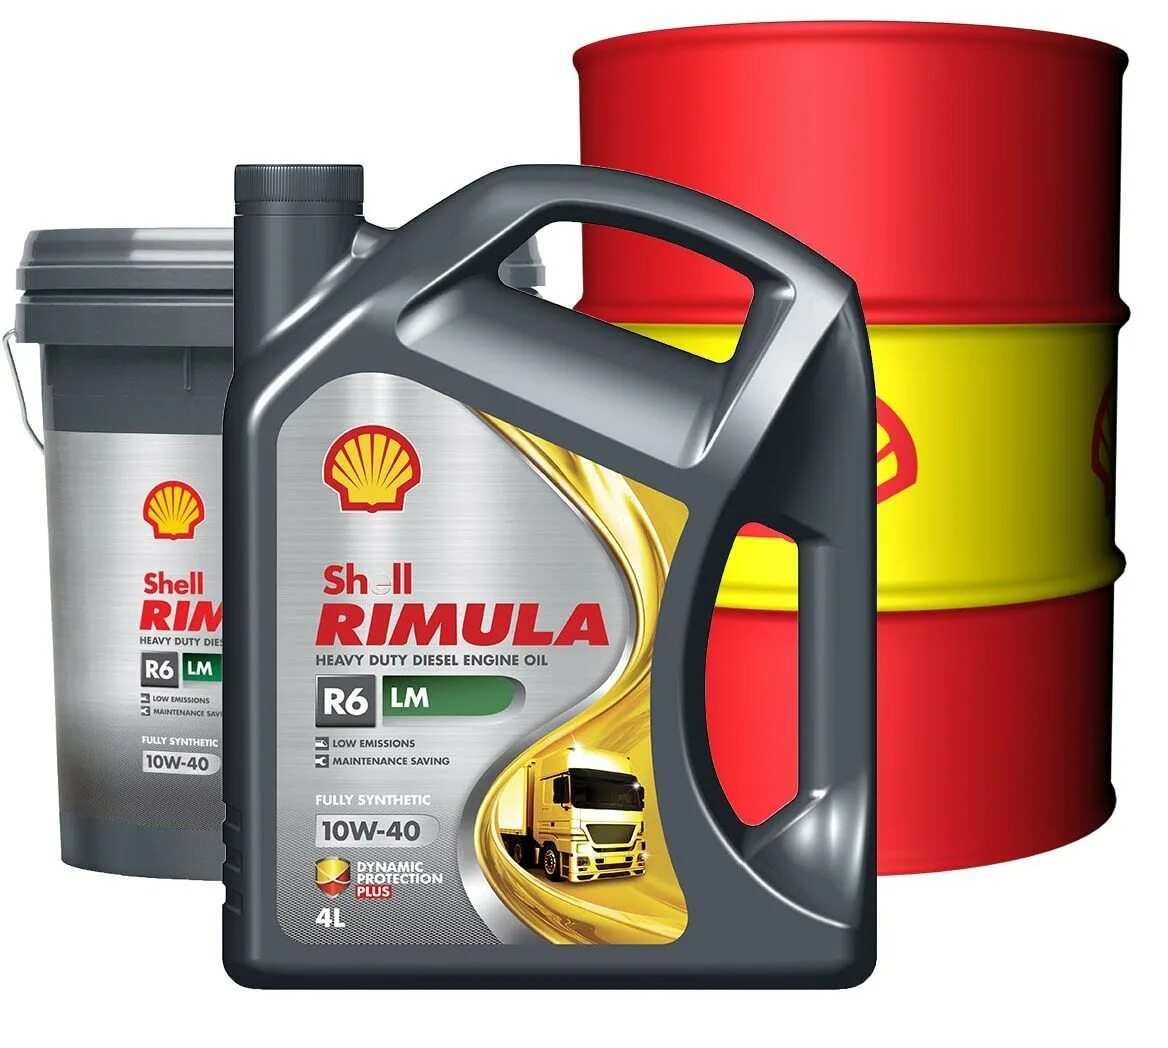 Shell Rimula r6 LM 10w-40. Shell Rimula r6. Shell Rimula r6 10w-40 Diesel. Shell Rimula r6 LM 10w-40 артикул.